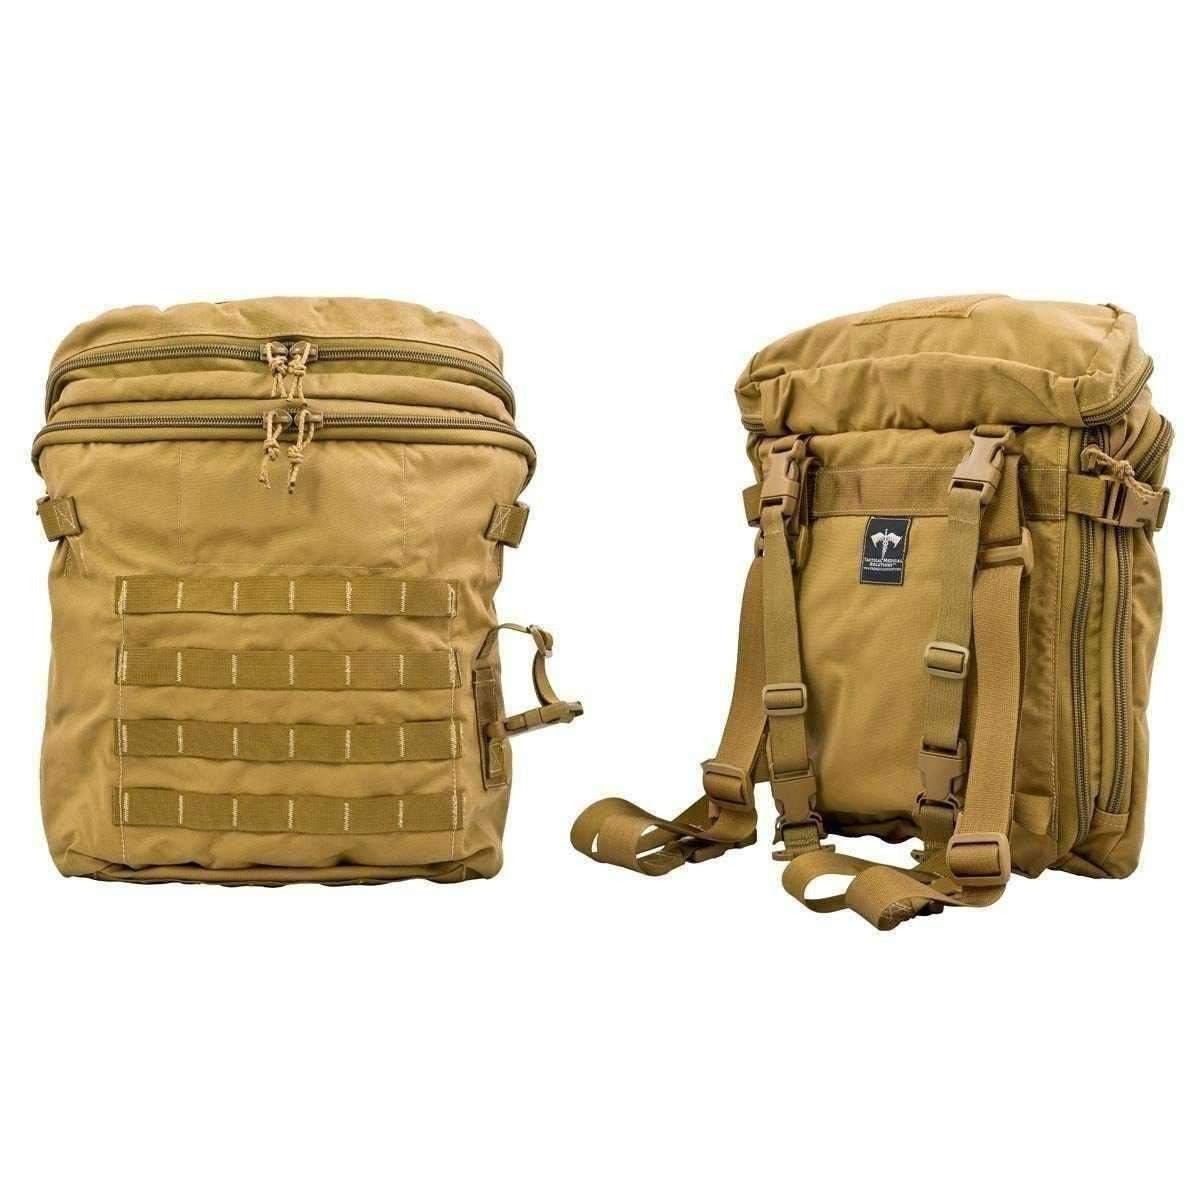 TacMed™ R-AID Medic Assault Bag - Vendor